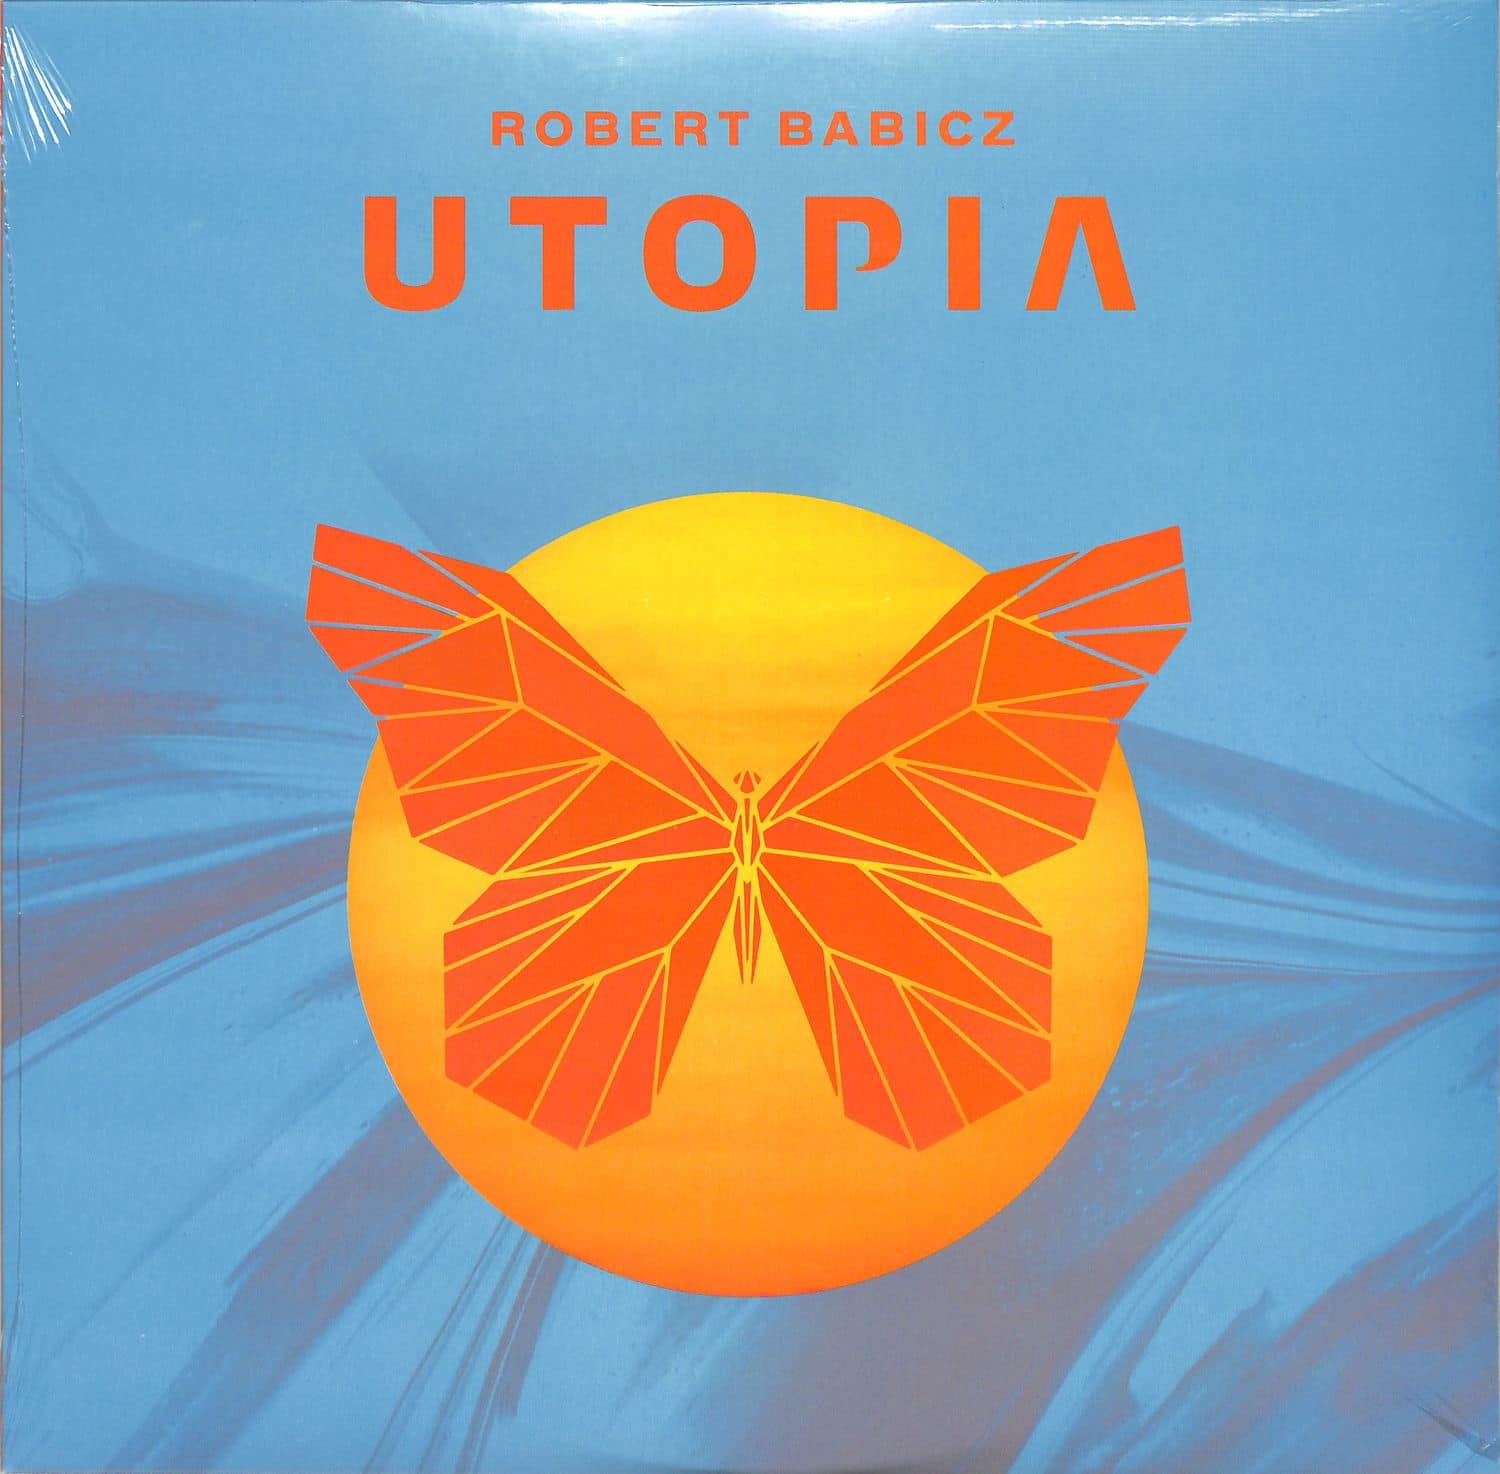 Robert Babicz - UTOPIA 